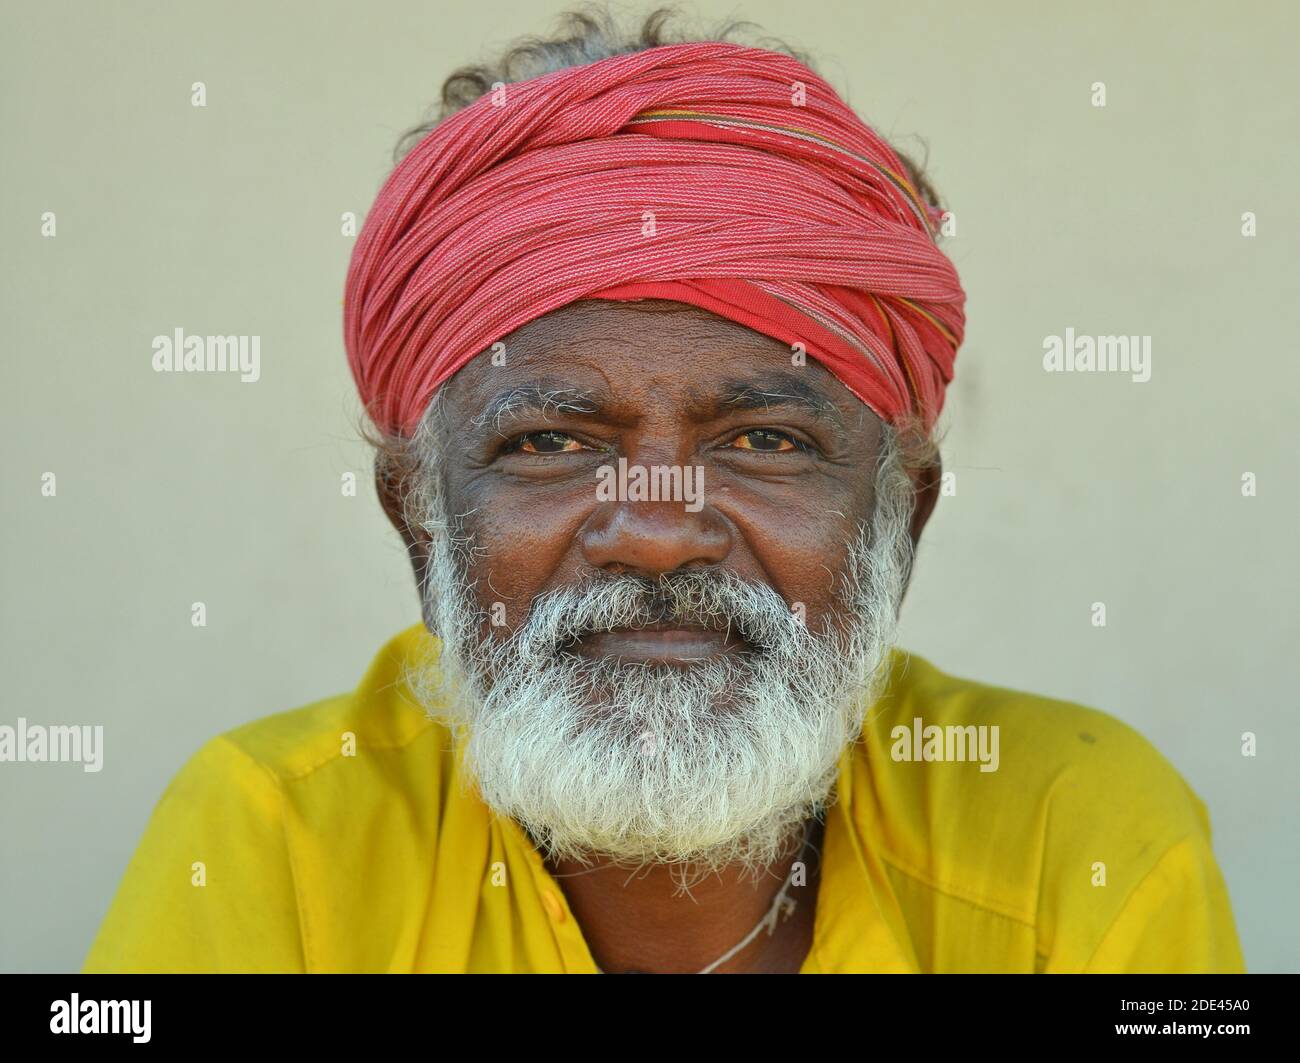 Positivo anziano amichevole indù indiano pellegrino con turbano rosso e la camicia gialla pone per la macchina fotografica. Foto Stock